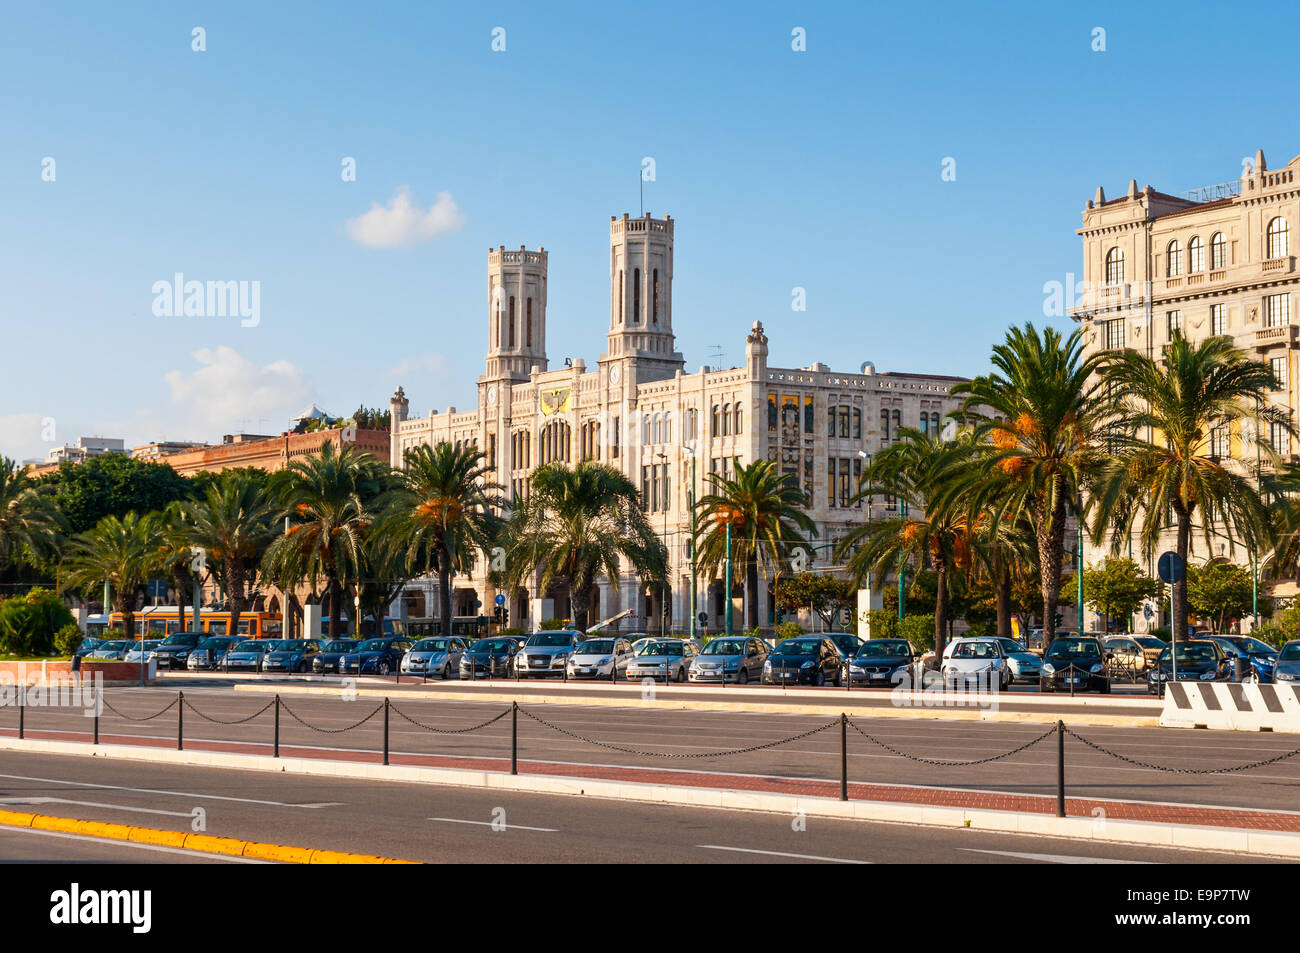 El Ayuntamiento de la ciudad de Cagliari (Palazzo Civico) fue inaugurado en 1907 por los estilos modernista y gótica catalana, Italia Foto de stock